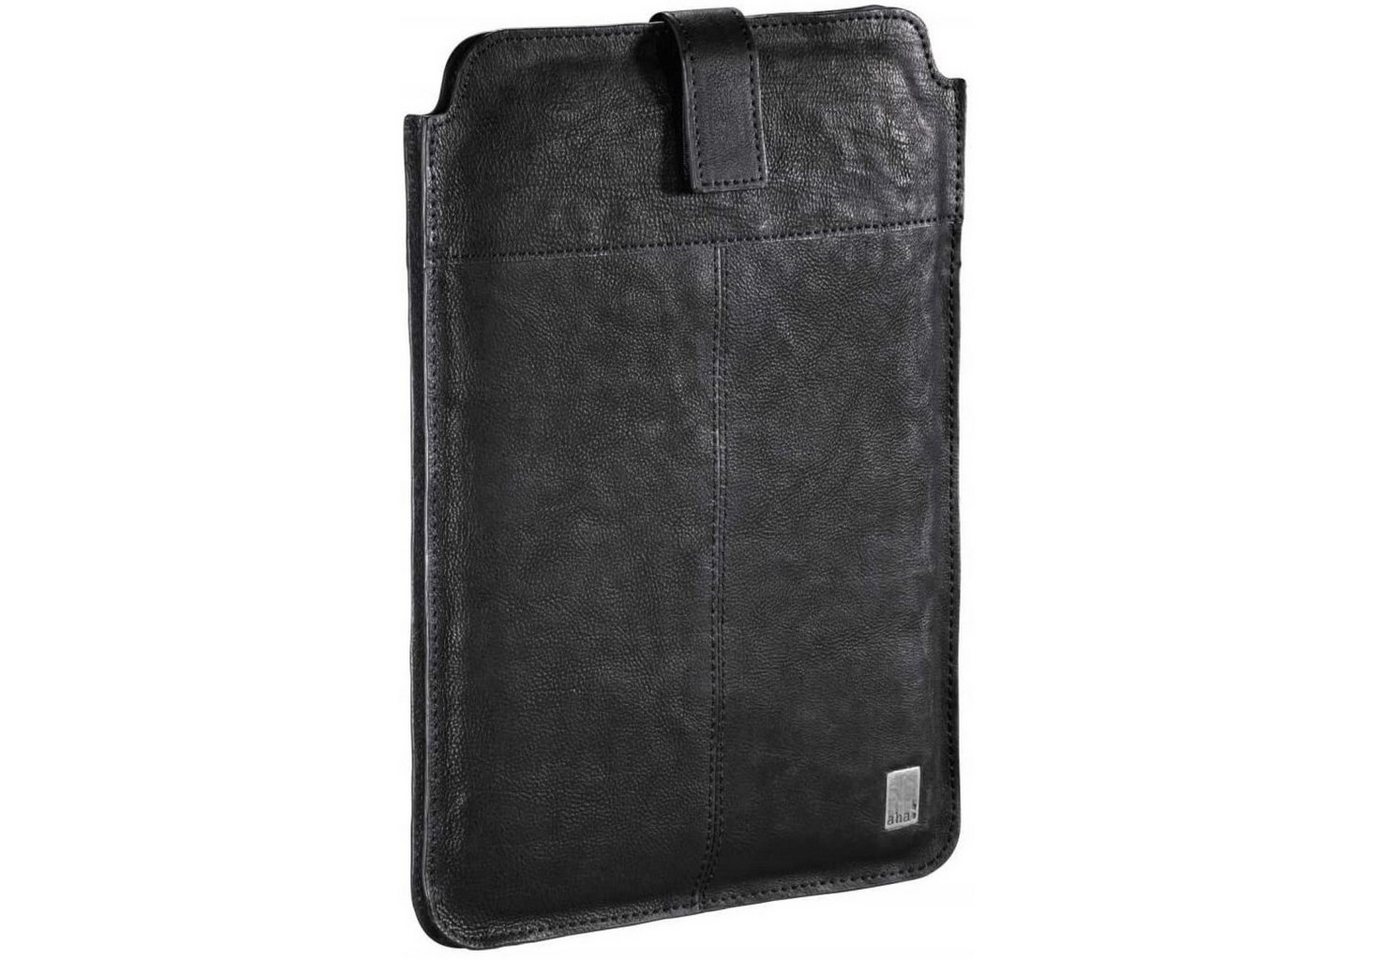 aha Tablet-Hülle Vintage Leder-Tasche Schutz-Hülle Etui Cover 10", Anti-Kratz Sleeve, passend für Tablet PC iPad 9,7" bis 10,9" Zoll etc. von aha